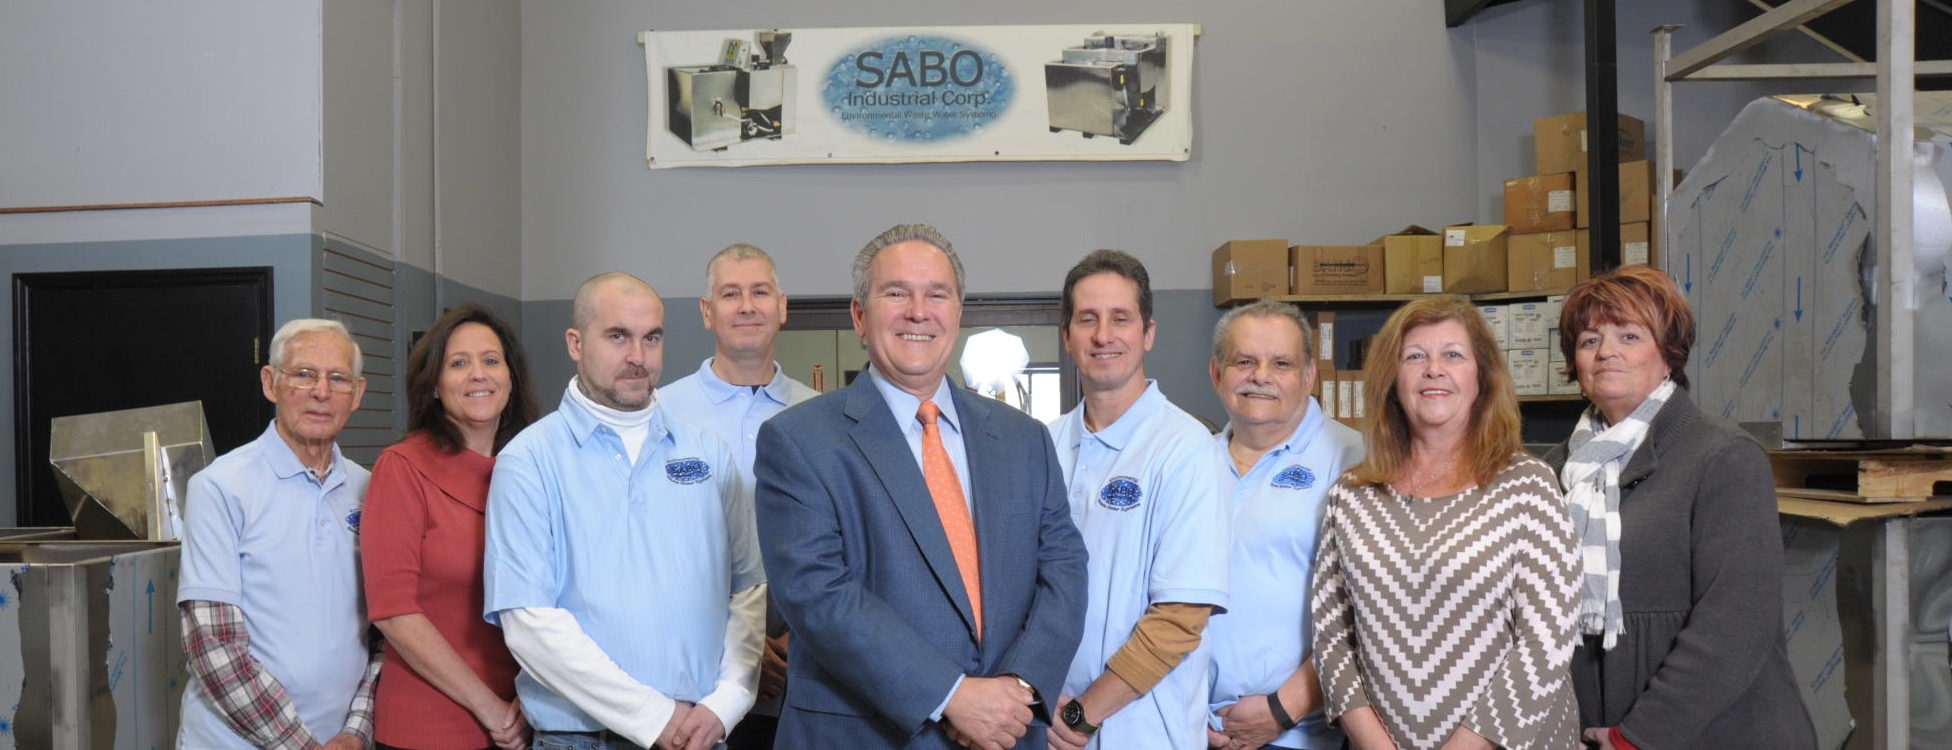 The Sabo Team